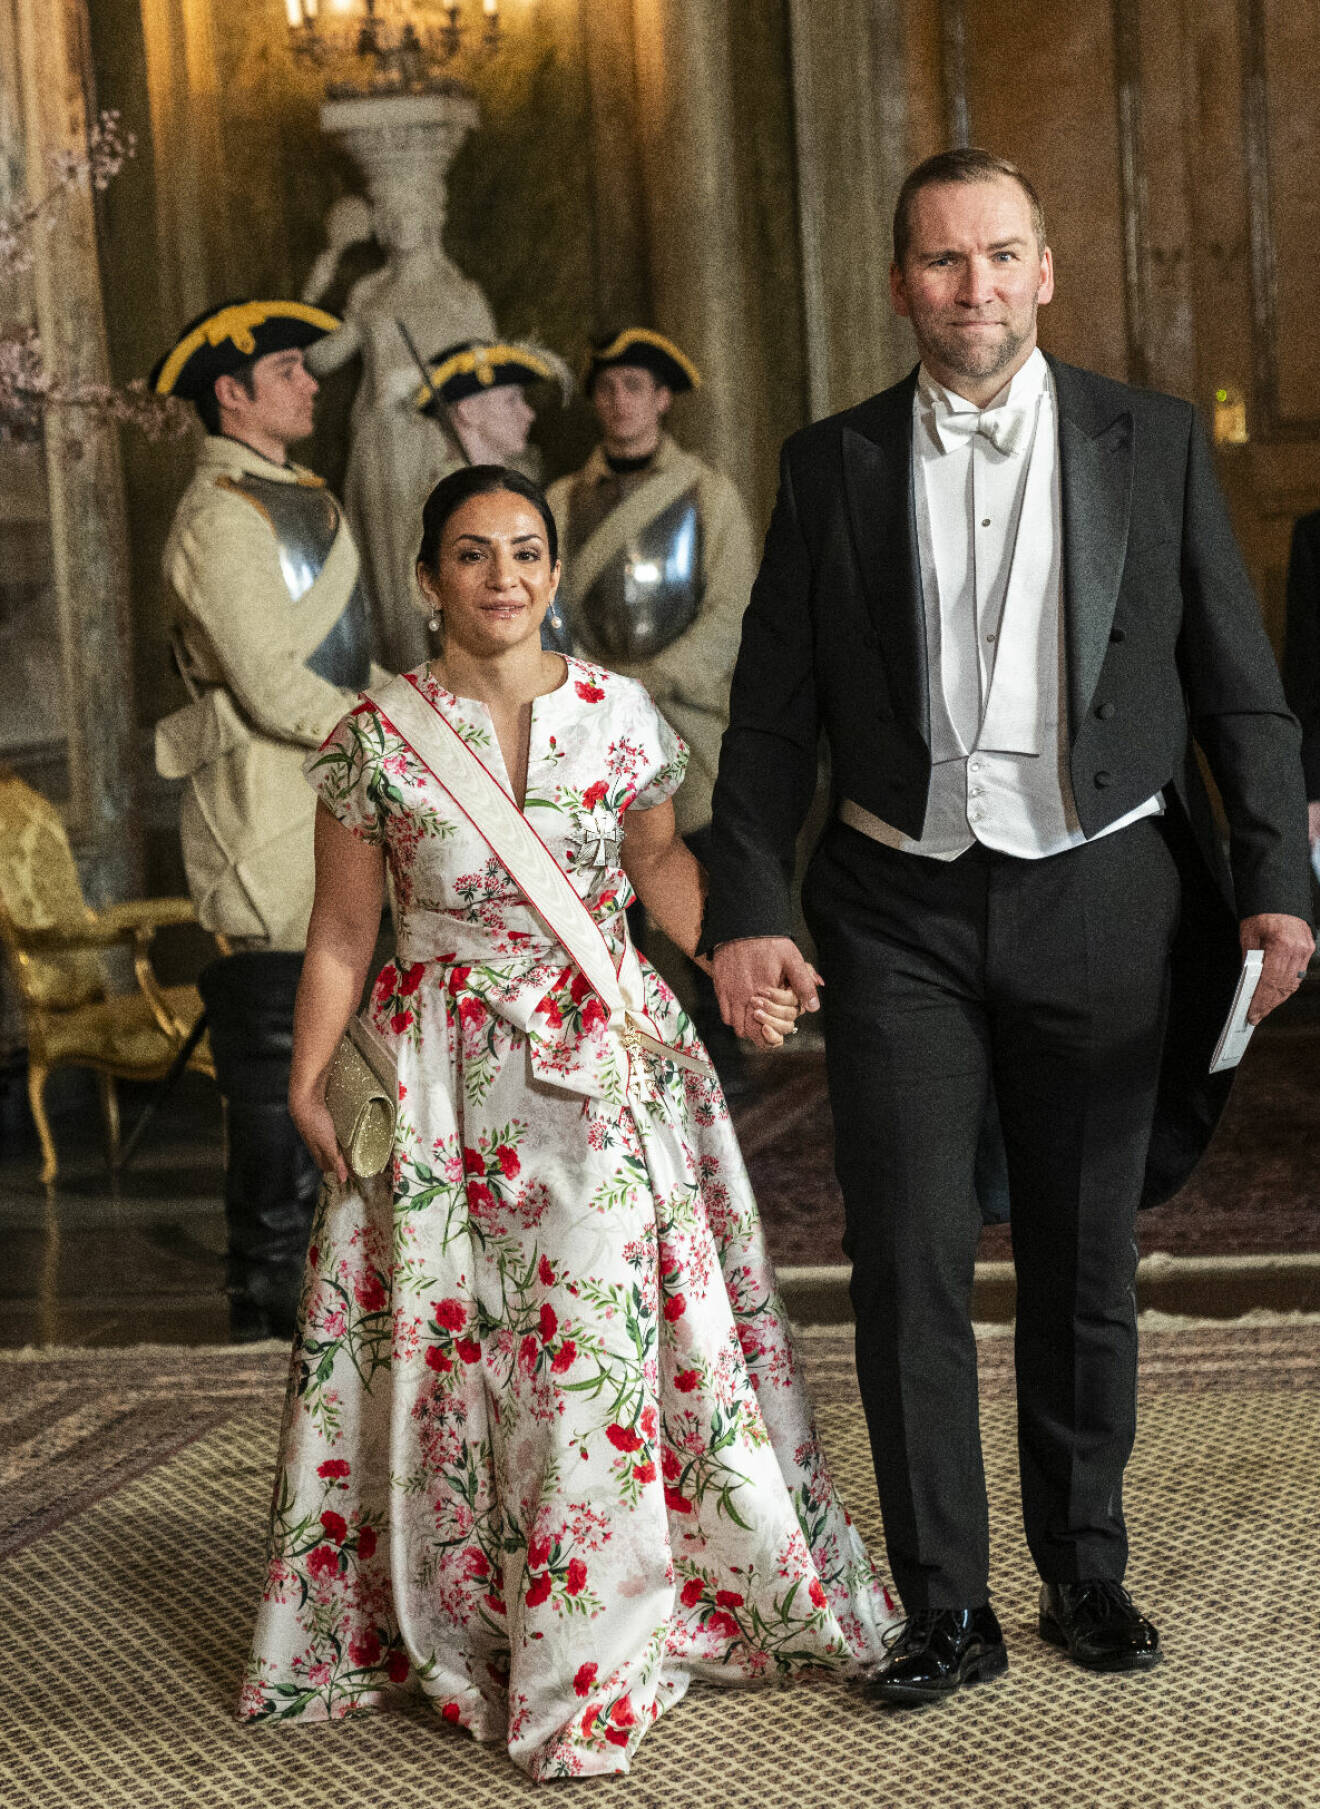 Kulturminister Parisa Liljestrand i klänning från Camilla Thulin – på fest hos kungen med sin Peter Wieslander